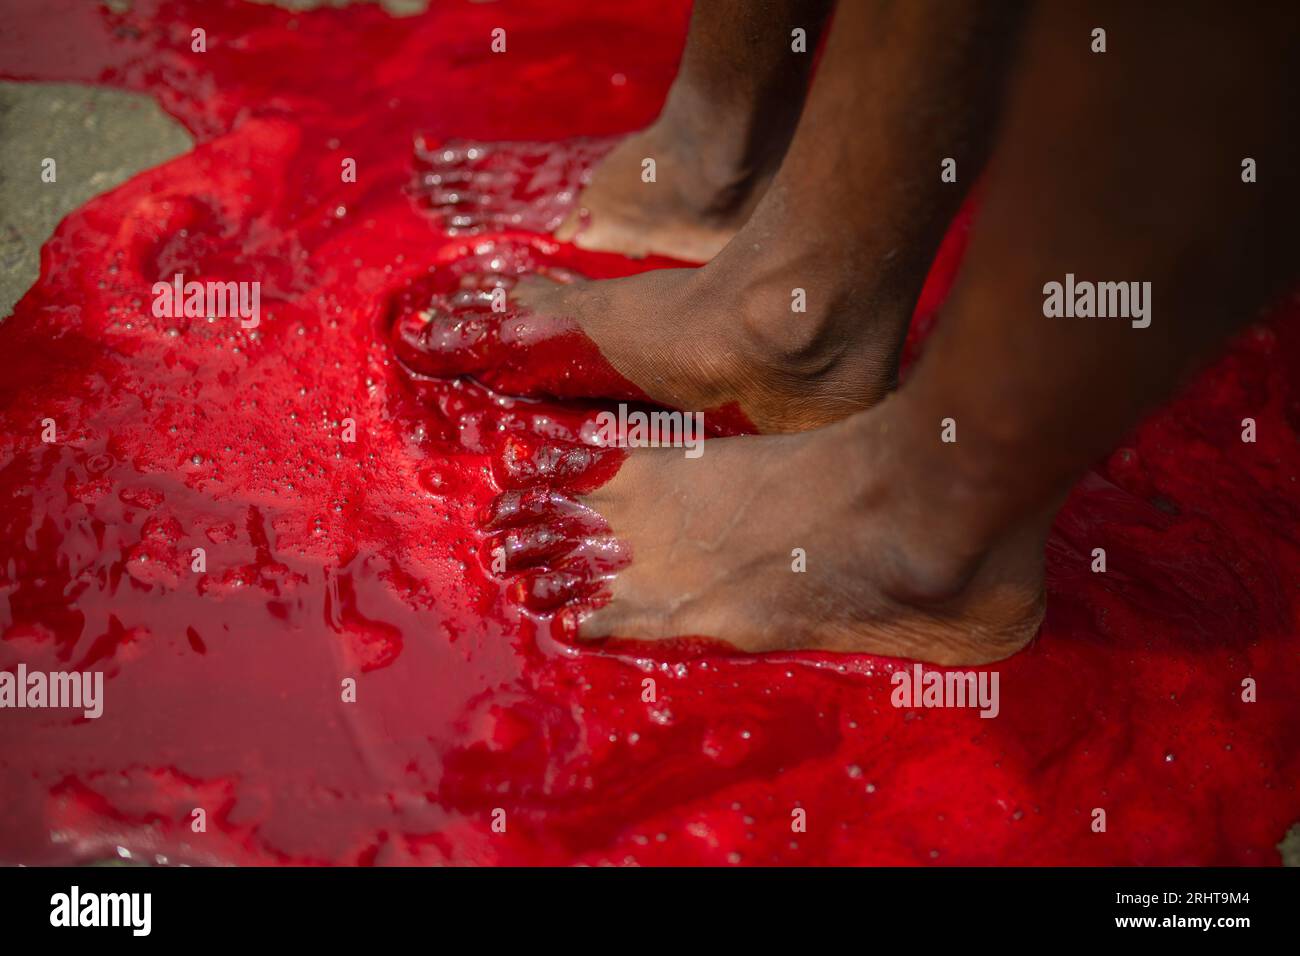 Les musulmans trempent leurs pieds dans le sang après avoir massacré un animal dans la rue à Dhaka pour le plus grand festival musulman Eid-ul-Azha également connu sous le nom d'Eid Banque D'Images